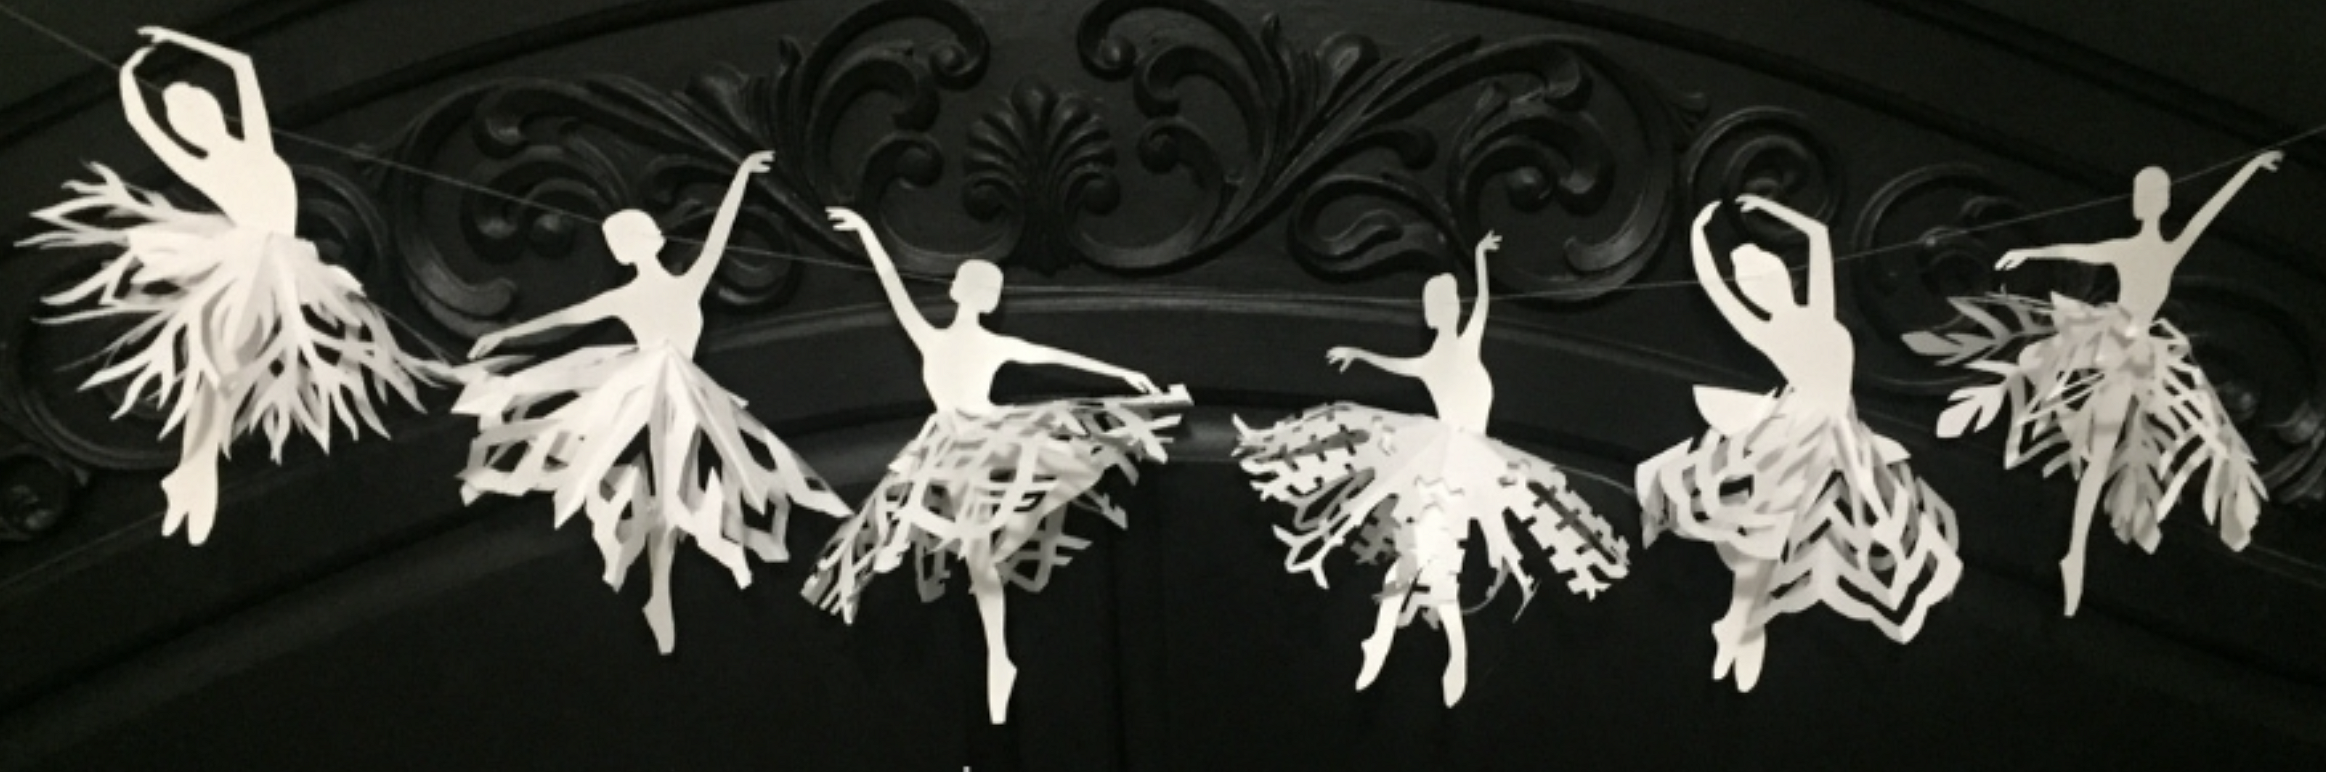 Снежинки балеринки — шаблоны